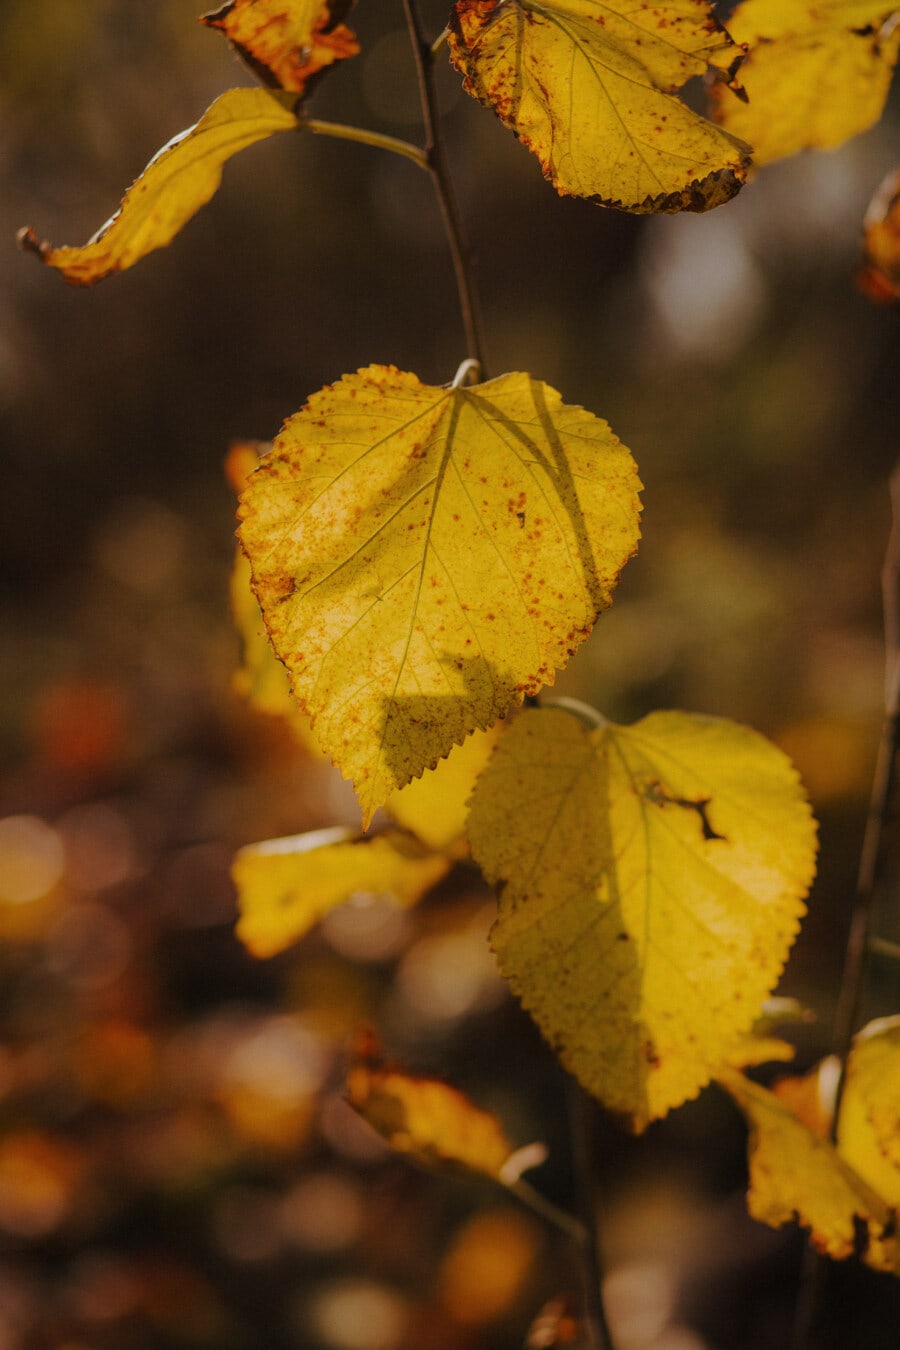 Żółte liście, oddziały, sezon jesień, żółtawo-brązowy, jesień, pozostawia, żółty, natura, roślina, liść